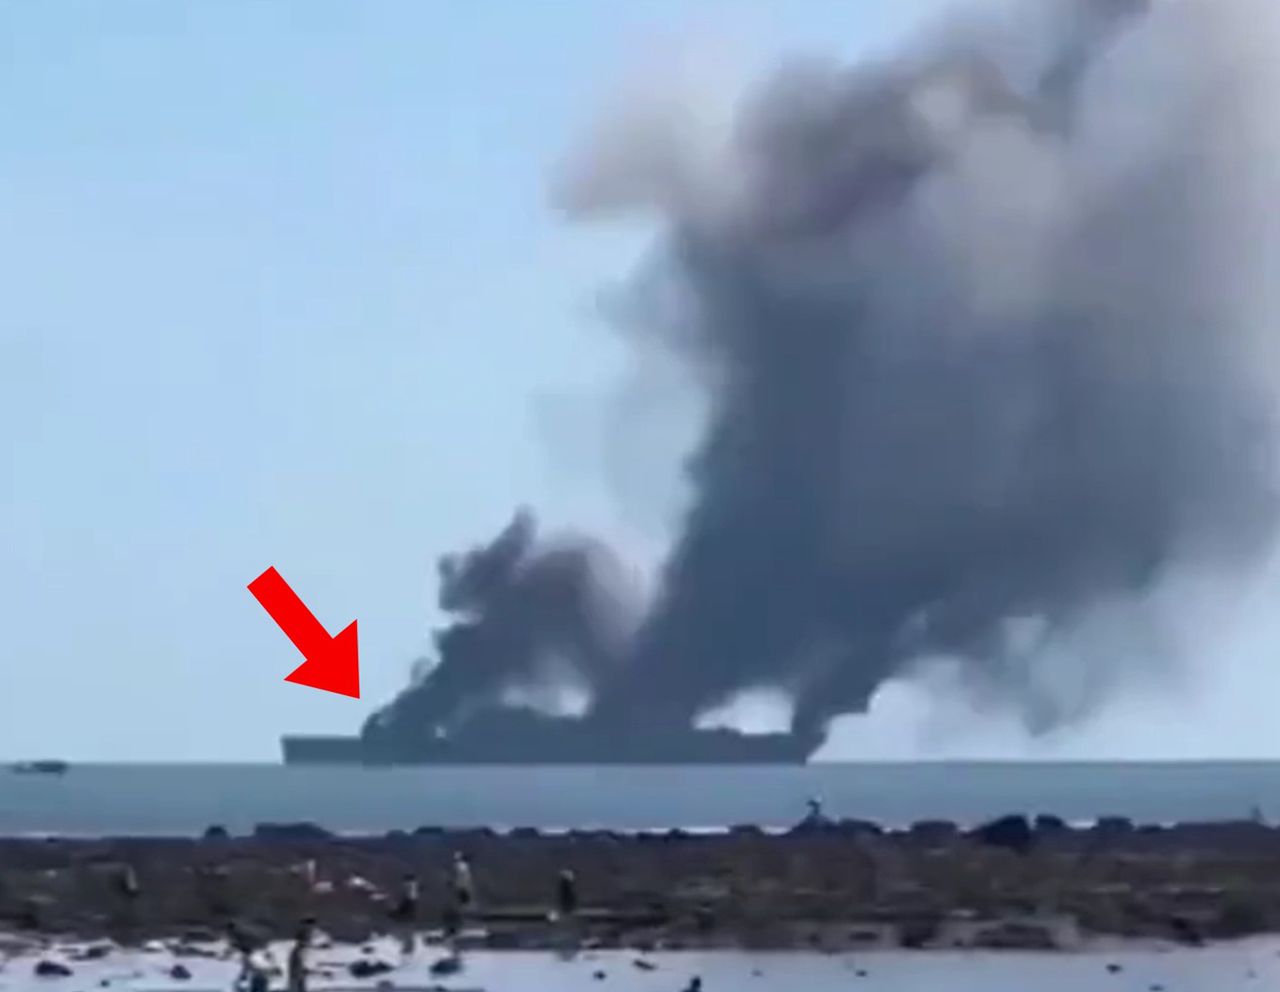 Chinese amphibious ship's smoke screen test under scrutiny